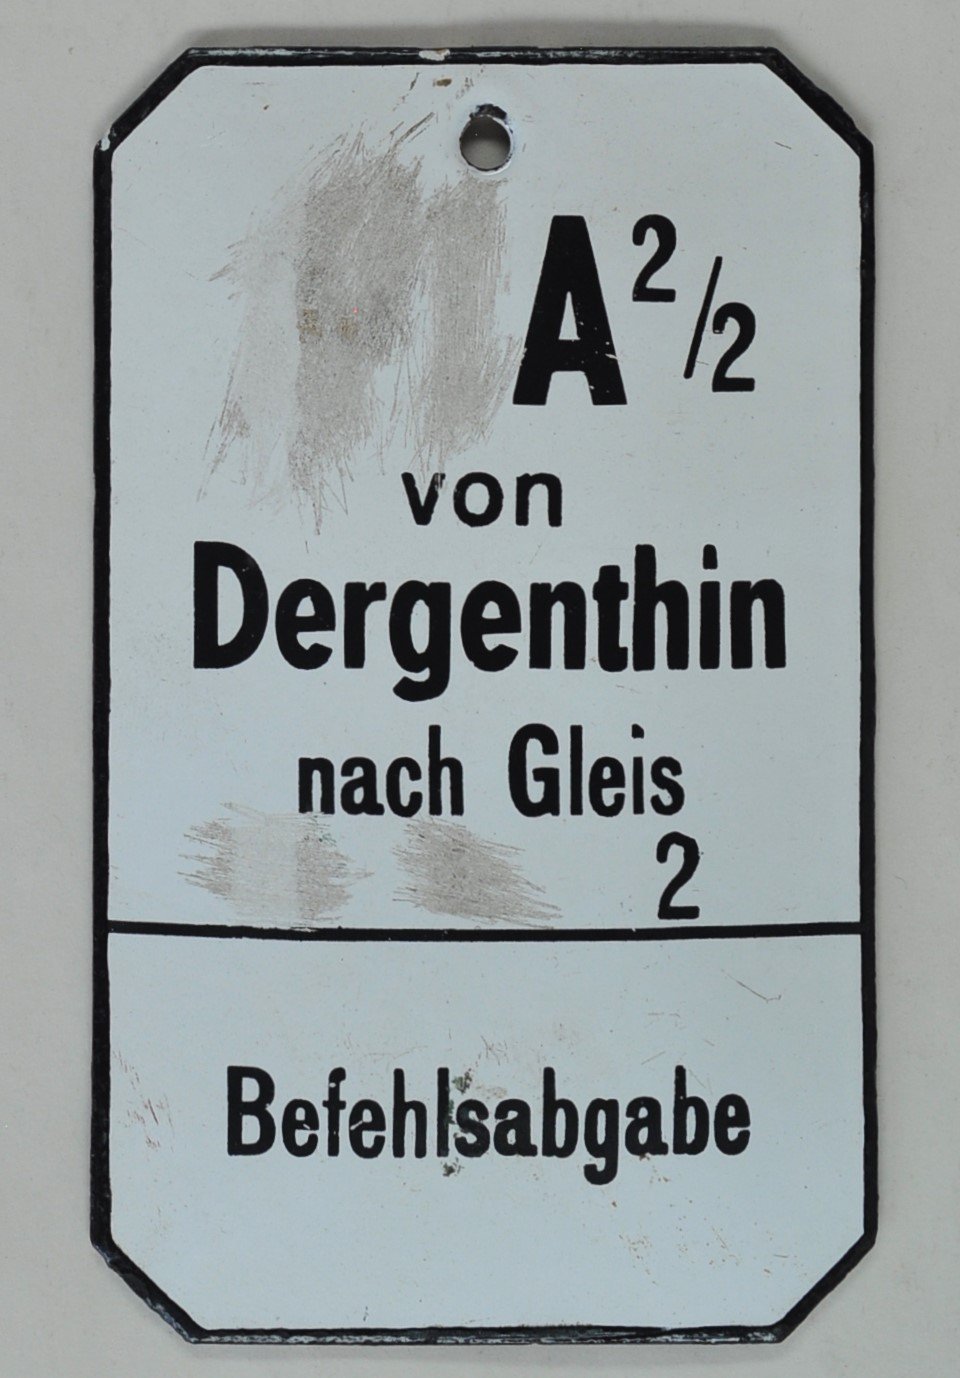 Schild der Reichsbahn: Dergenthin (DDR Geschichtsmuseum im Dokumentationszentrum Perleberg CC BY-SA)